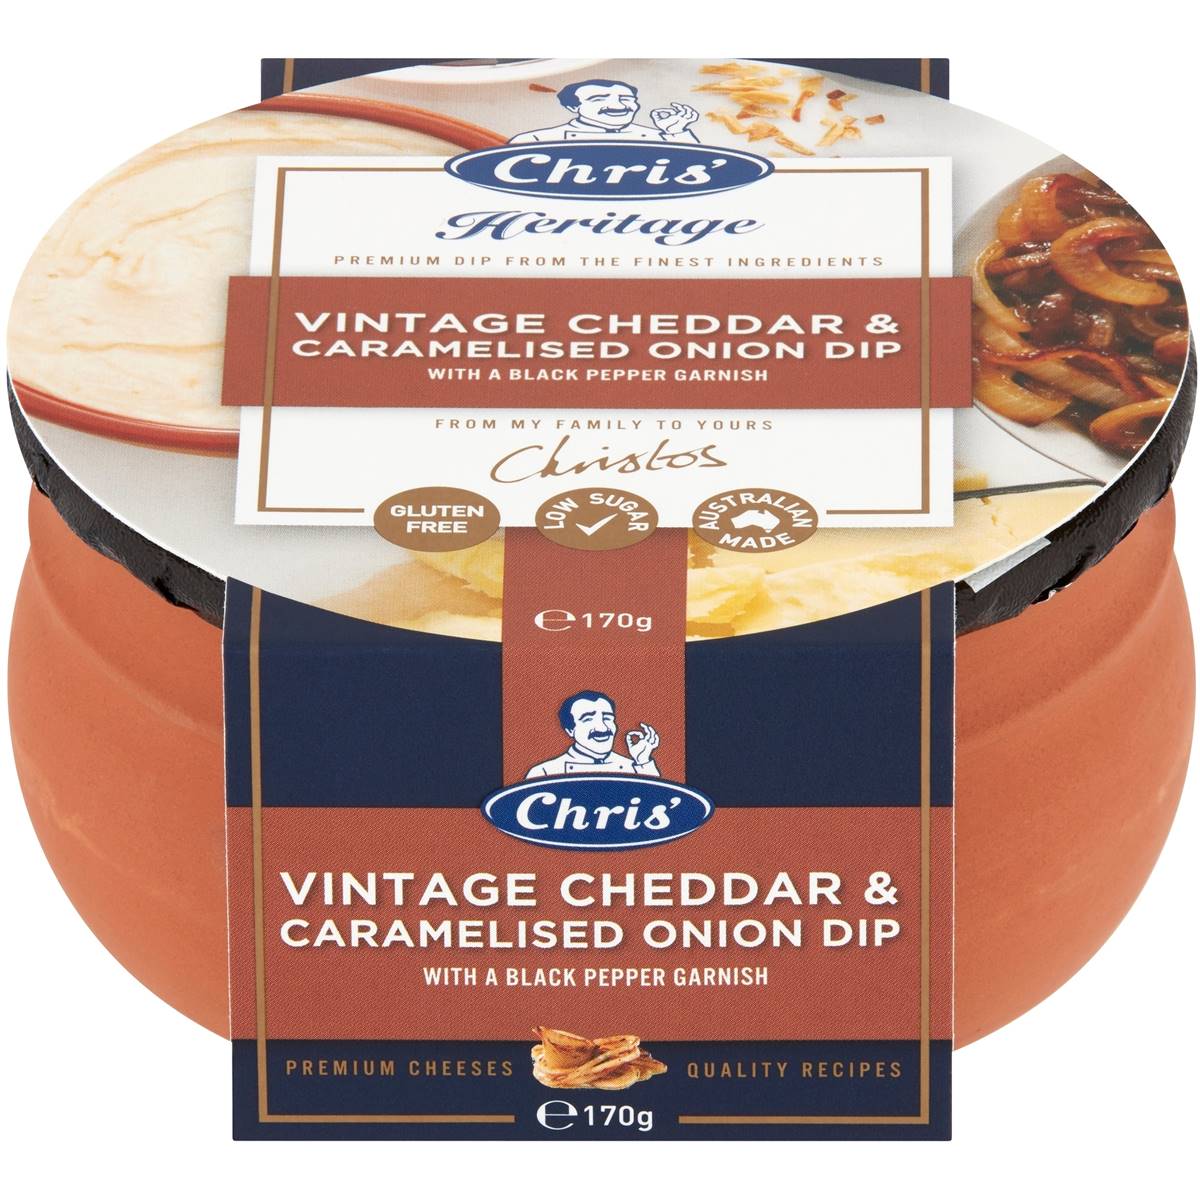 Chris Heritage Vintage Cheddar & Caramelized Onion Dip 170g